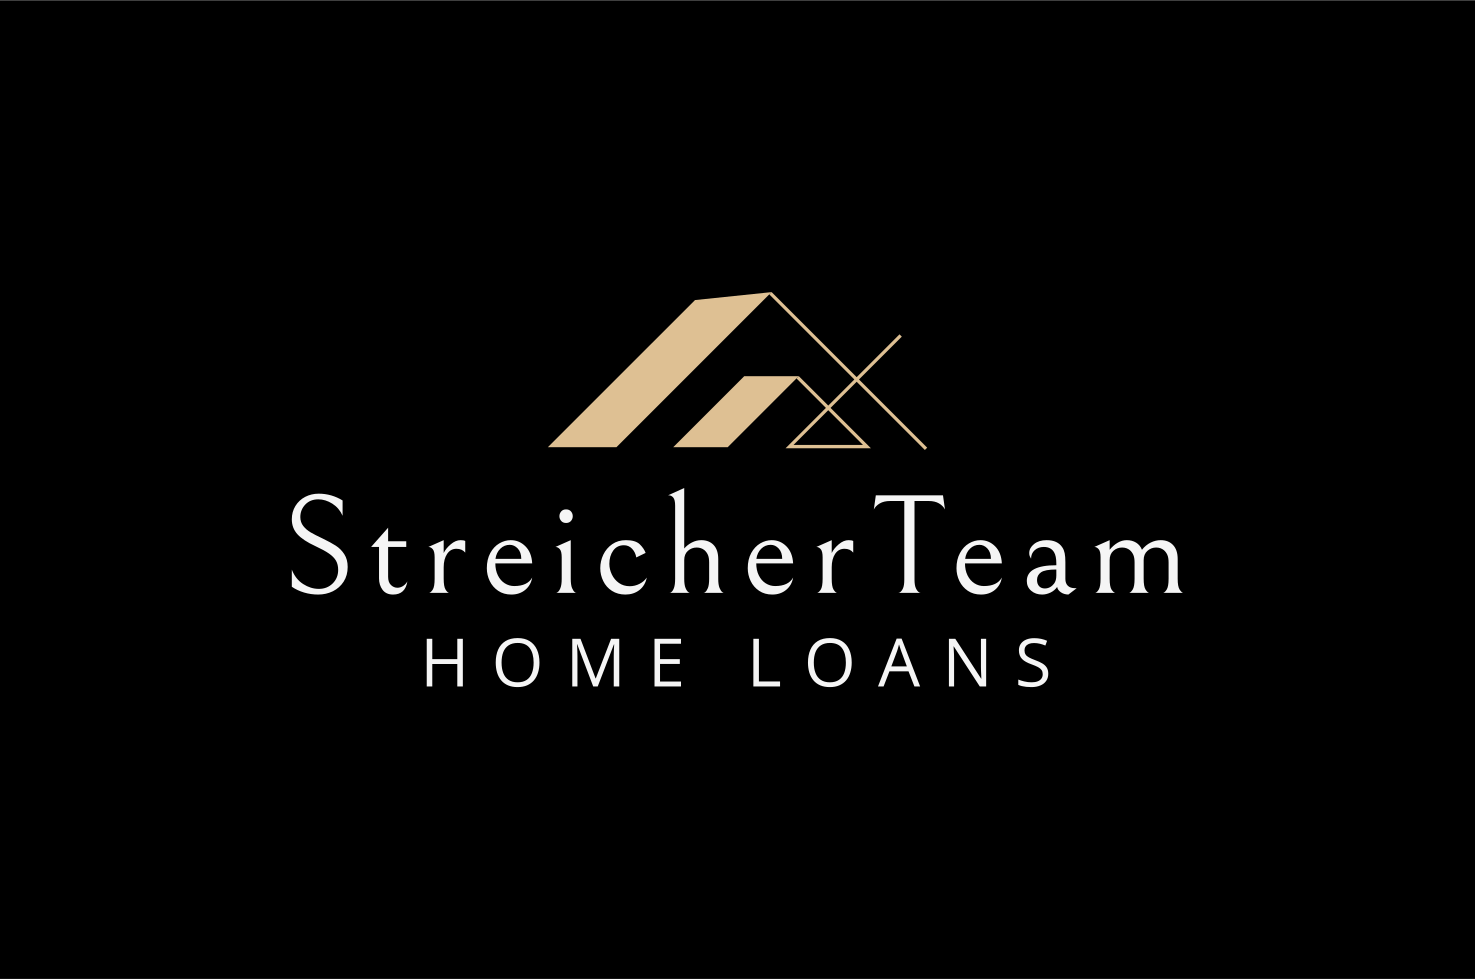 StreicherTeam Home Loans, C2Financnial